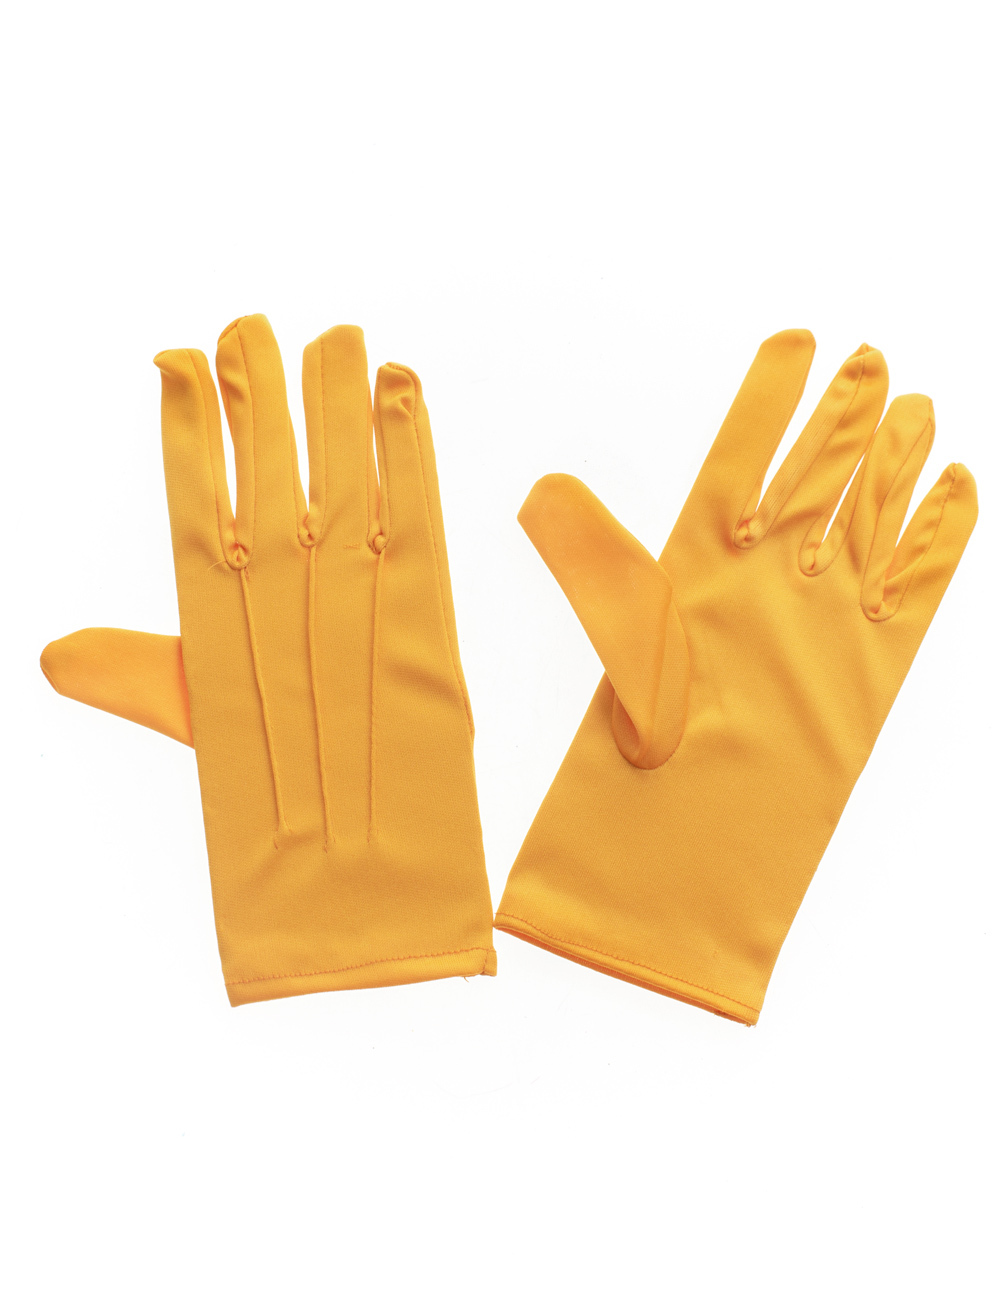 Handschuhe kurz mit Naht gelb